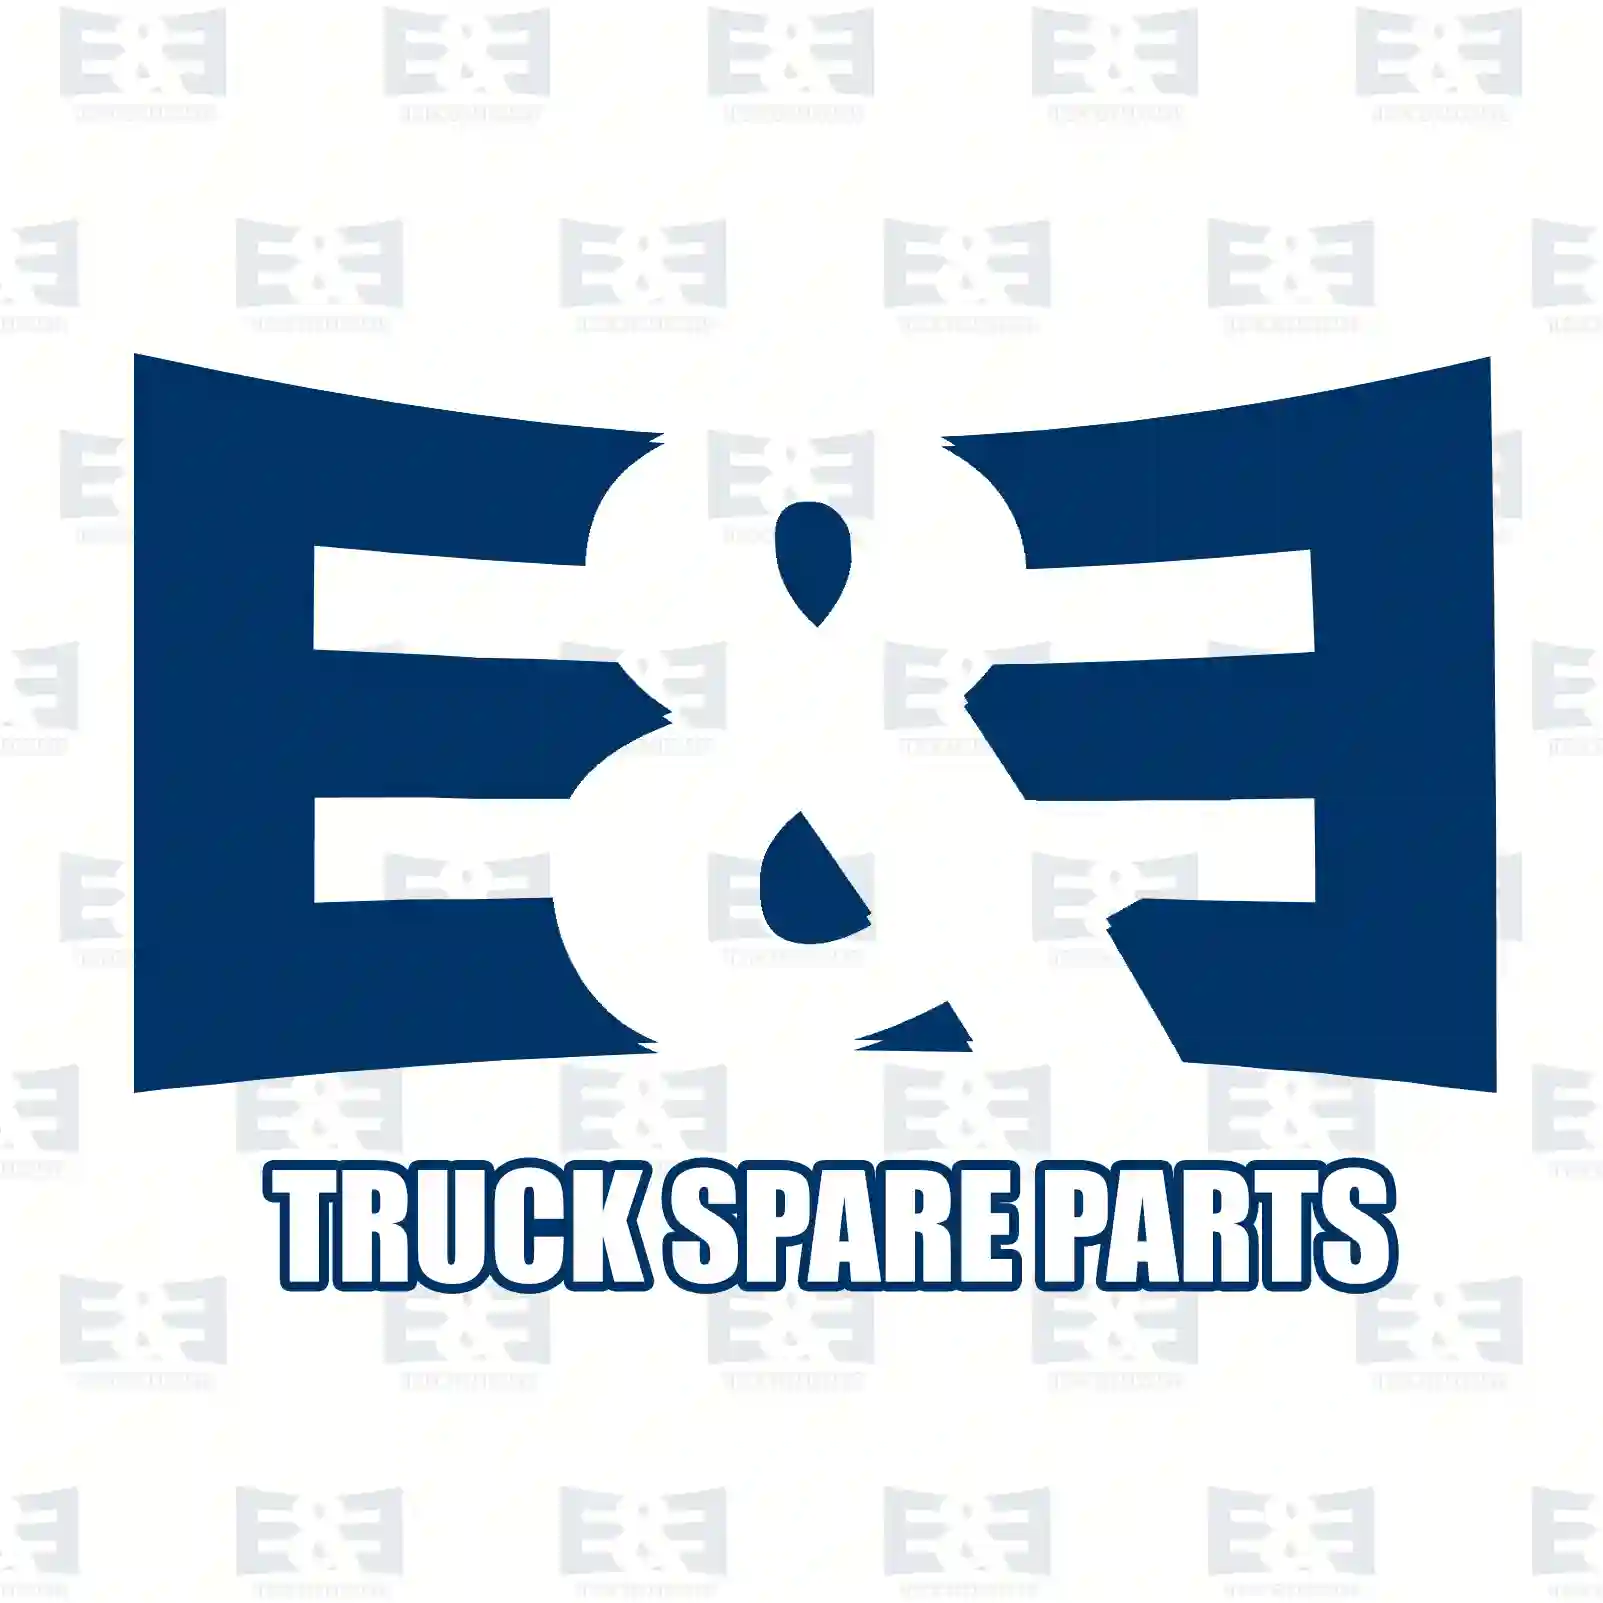 Brake cylinder, 2E2296669, 1405781, 1427479, 1851934, ||  2E2296669 E&E Truck Spare Parts | Truck Spare Parts, Auotomotive Spare Parts Brake cylinder, 2E2296669, 1405781, 1427479, 1851934, ||  2E2296669 E&E Truck Spare Parts | Truck Spare Parts, Auotomotive Spare Parts